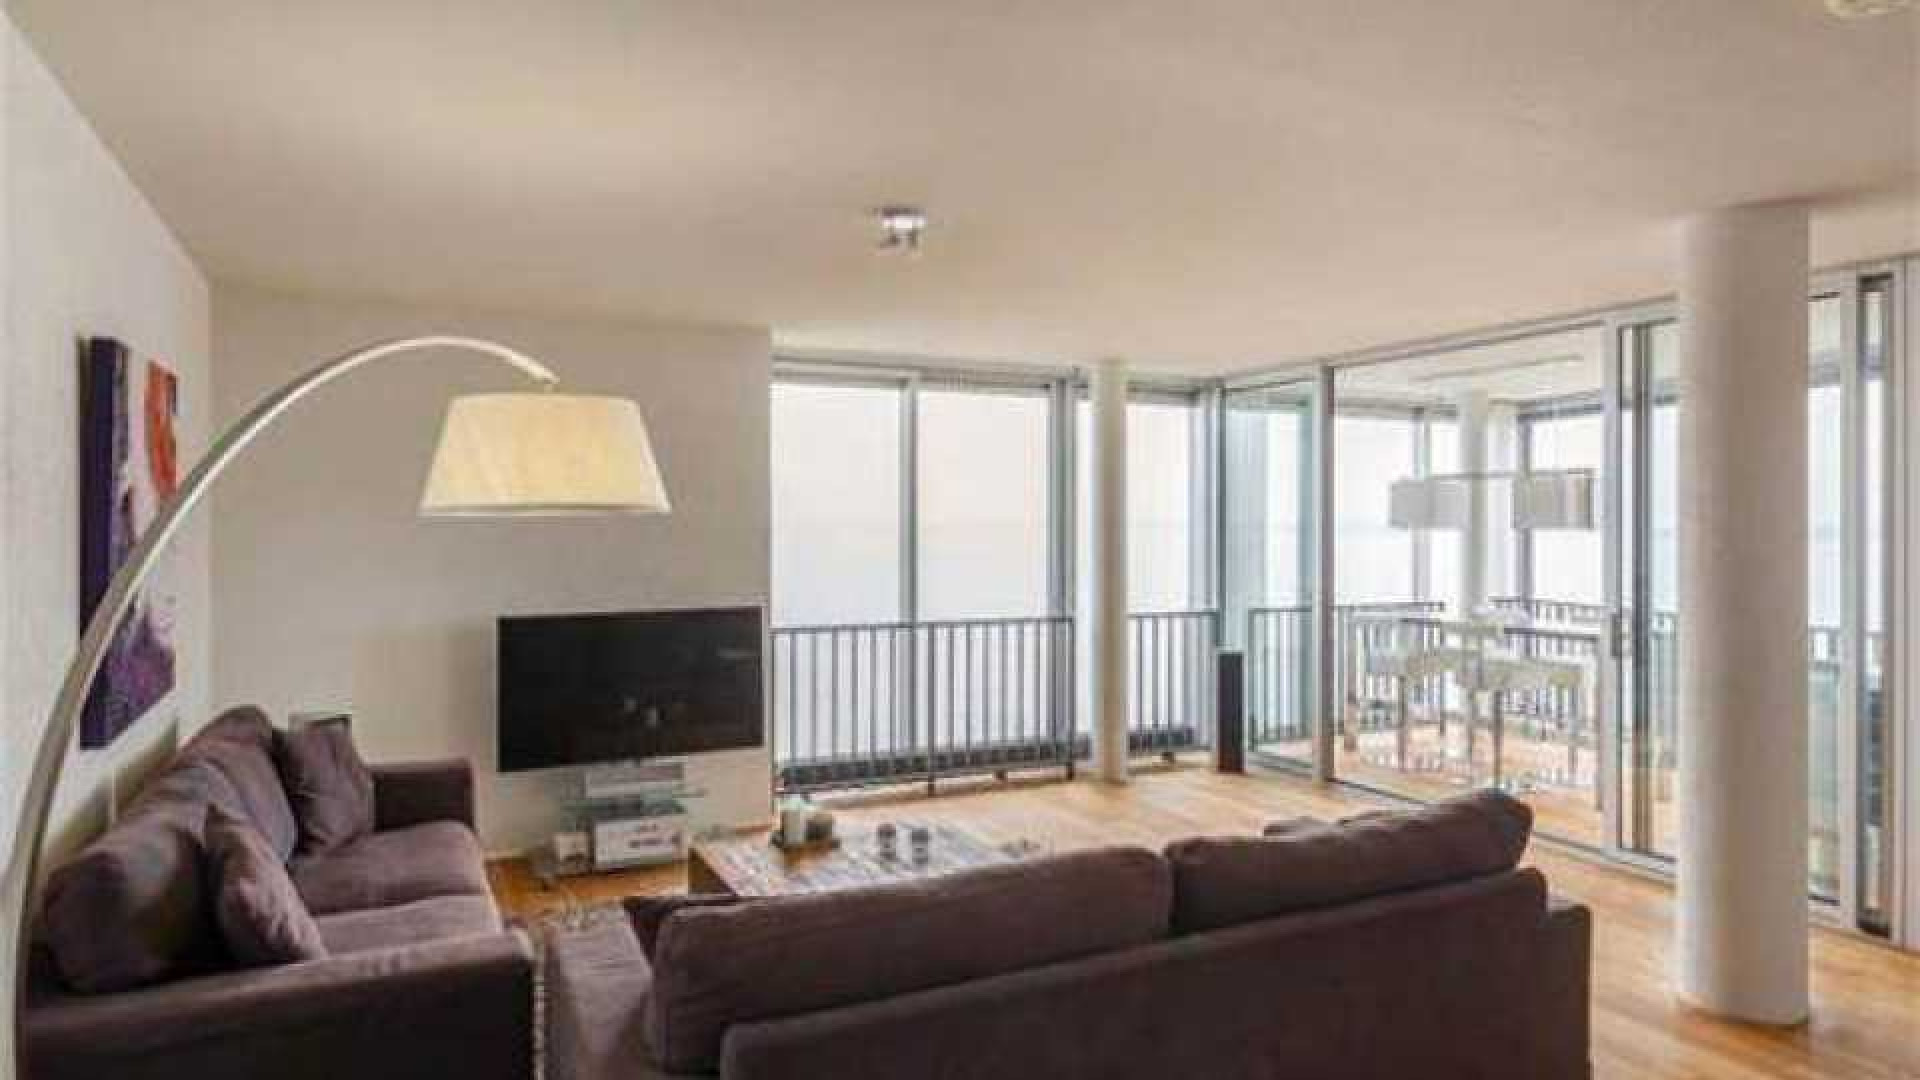 Thomas Berge ruilt riante villa met botenhuis in voor appartement.